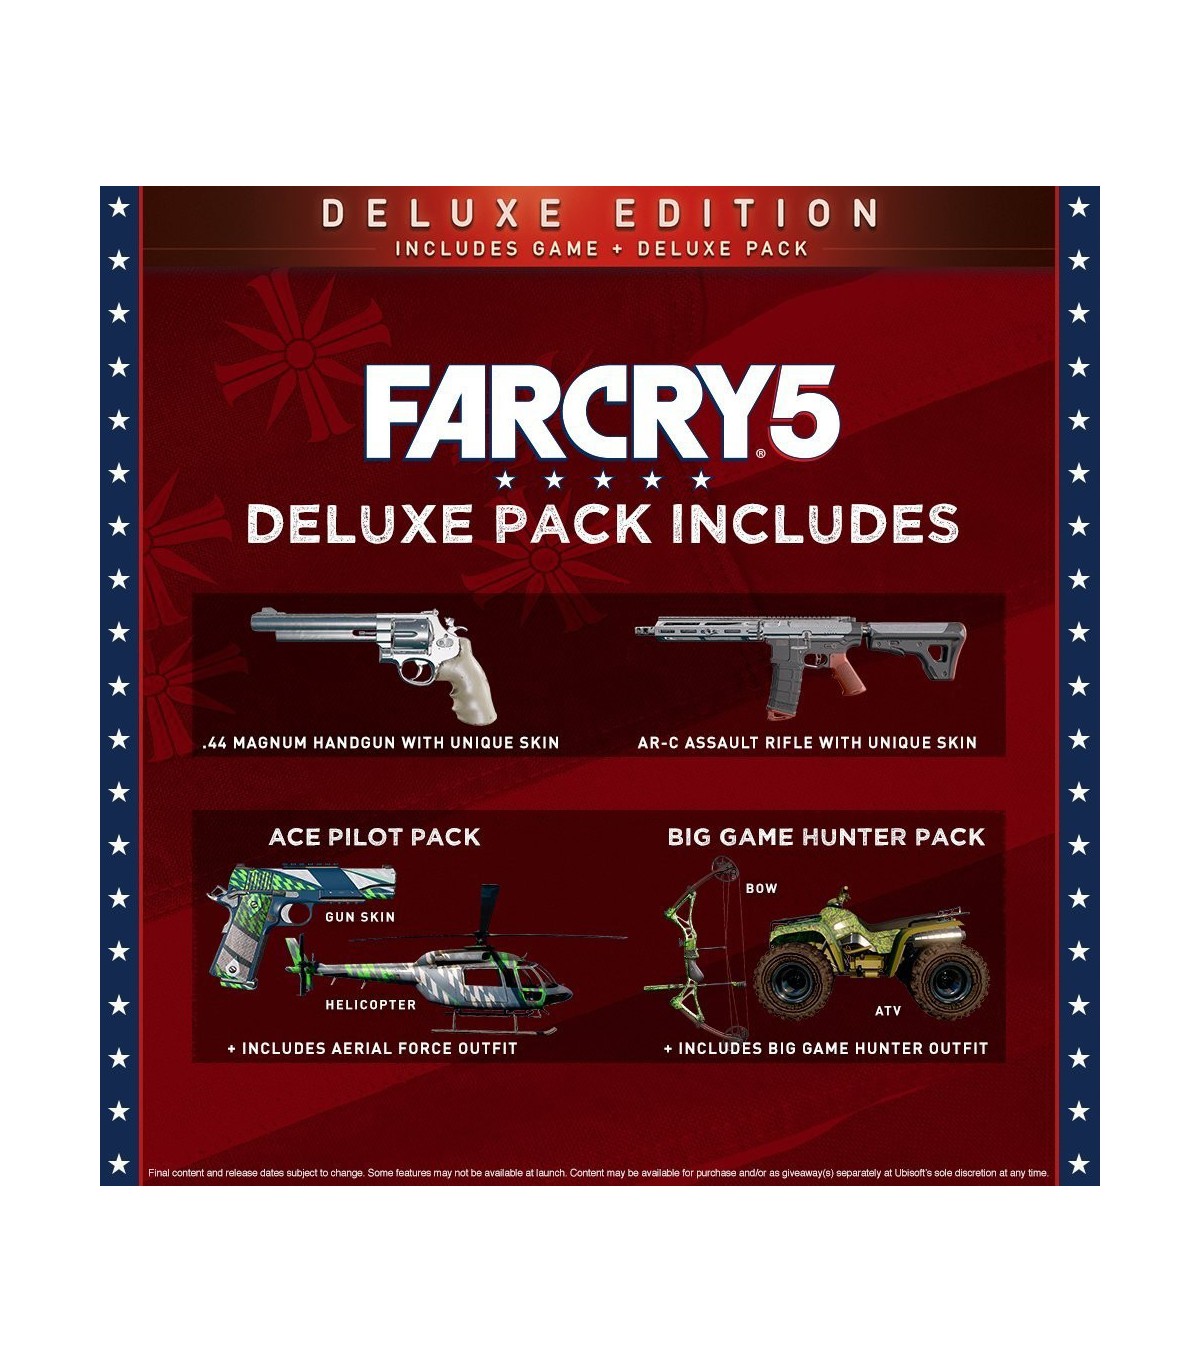 بازی farcry 5 deluxe edition - ایکس باکس وان